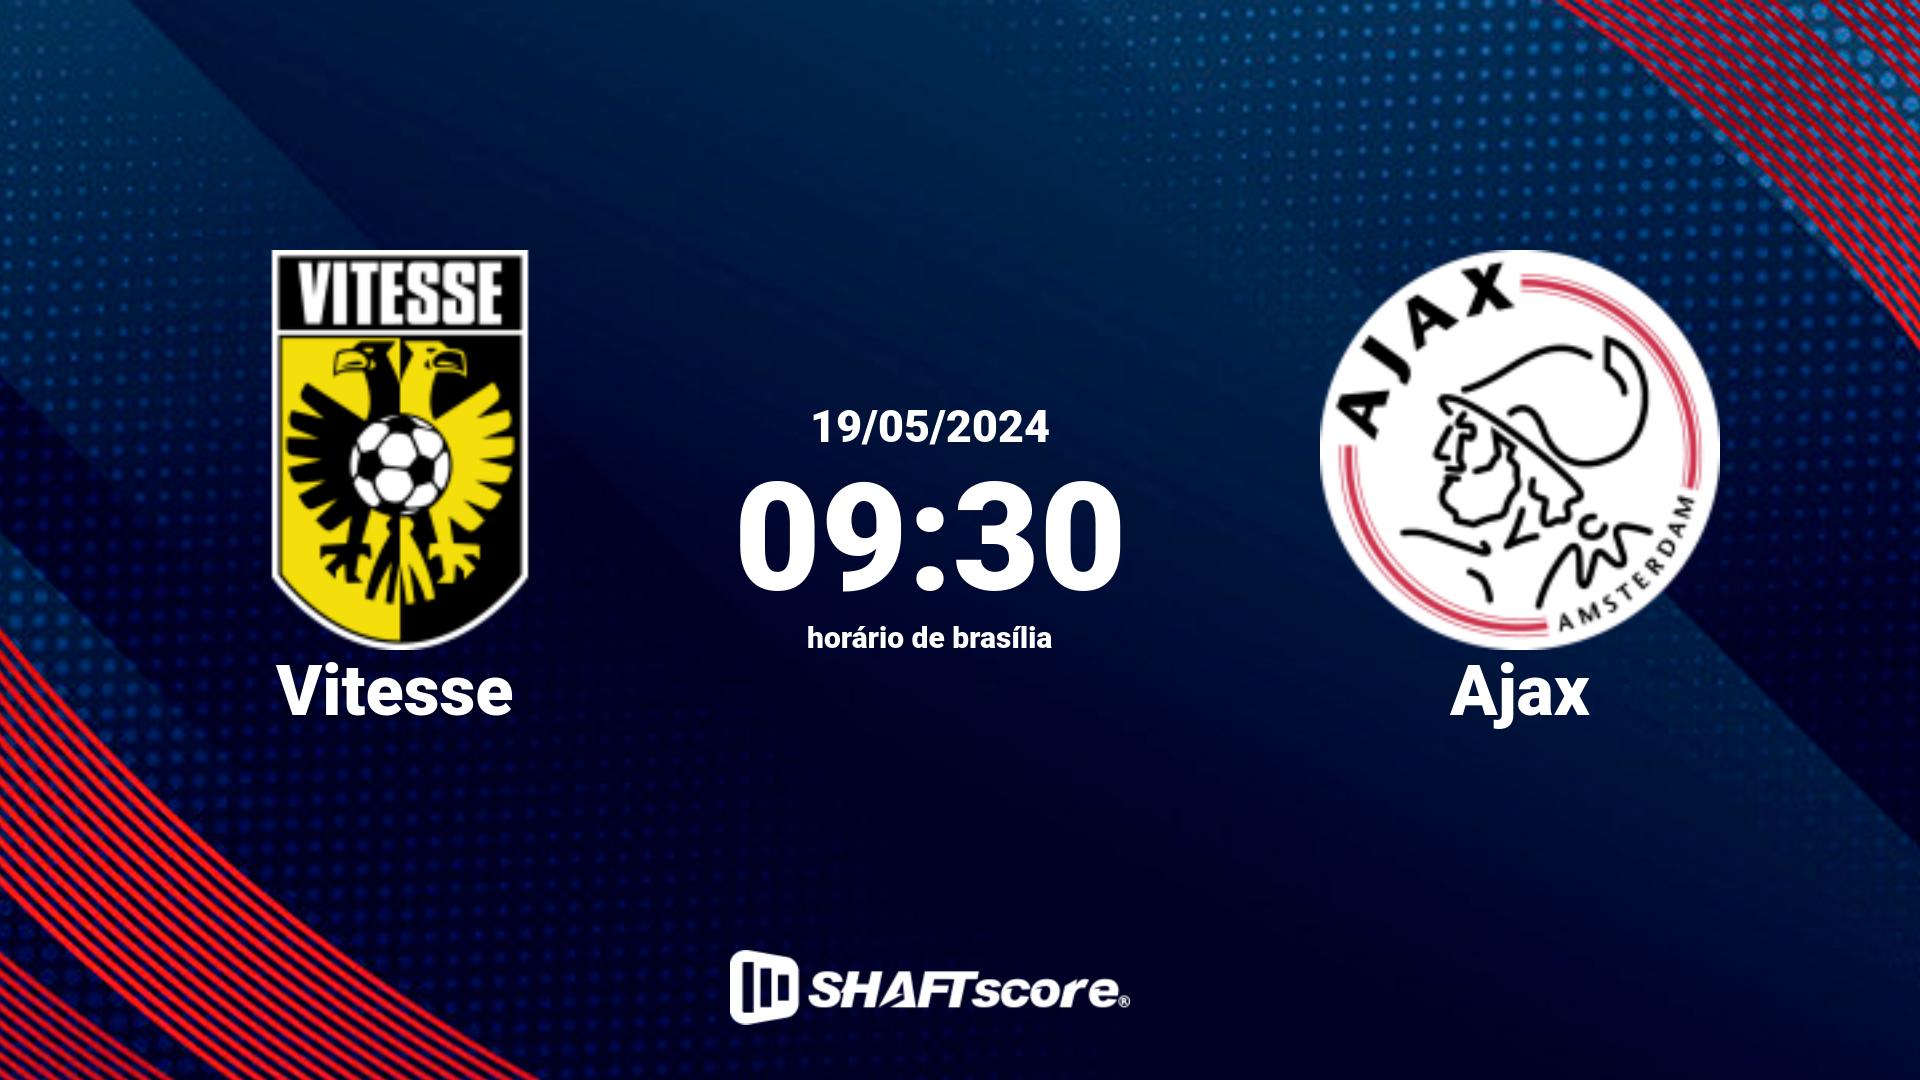 Estatísticas do jogo Vitesse vs Ajax 19.05 09:30